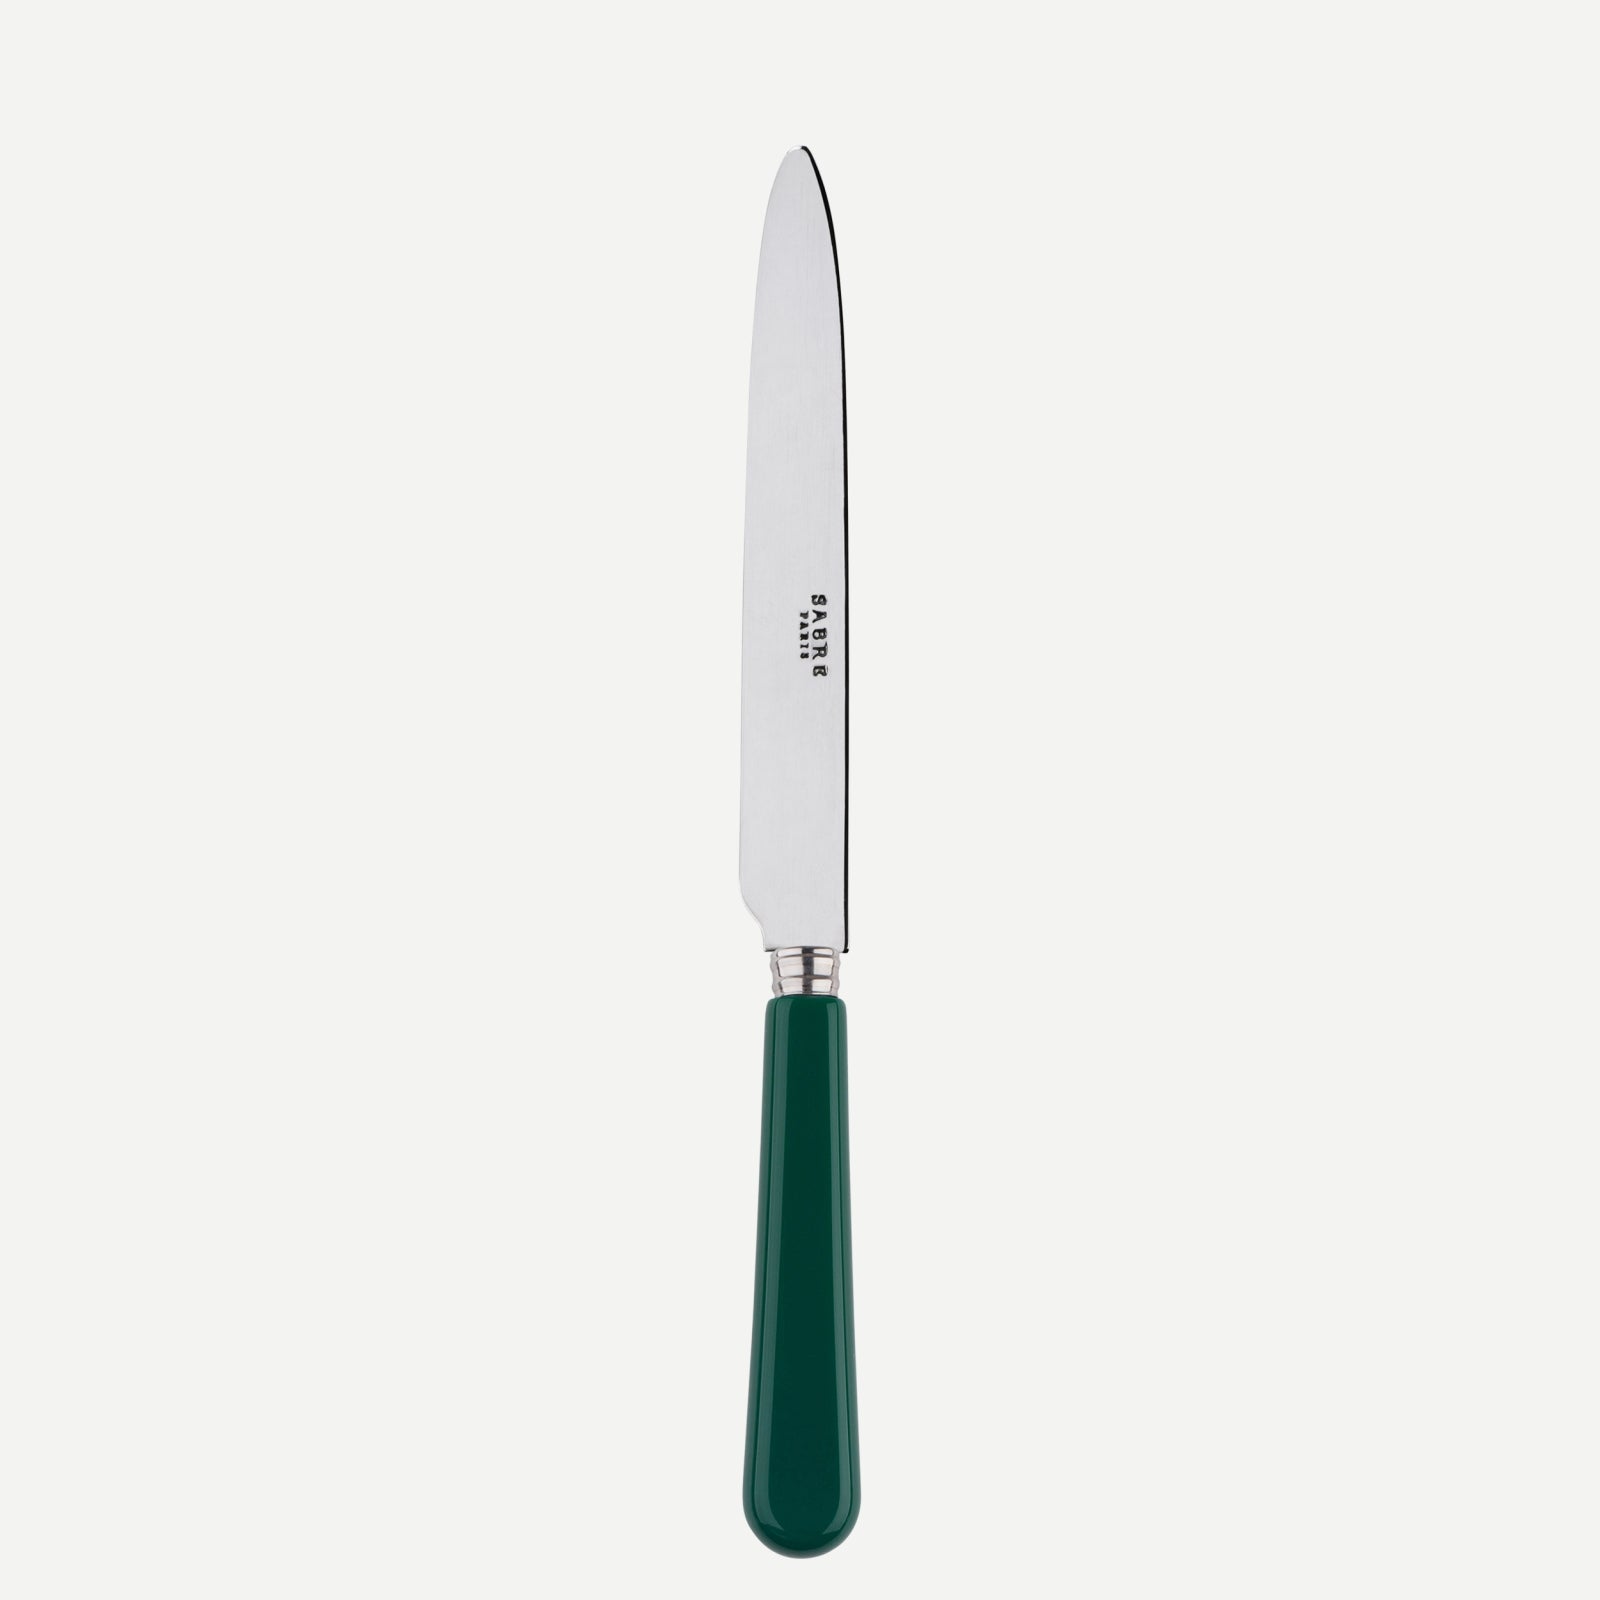 Dinner knife - Pop unis - Green